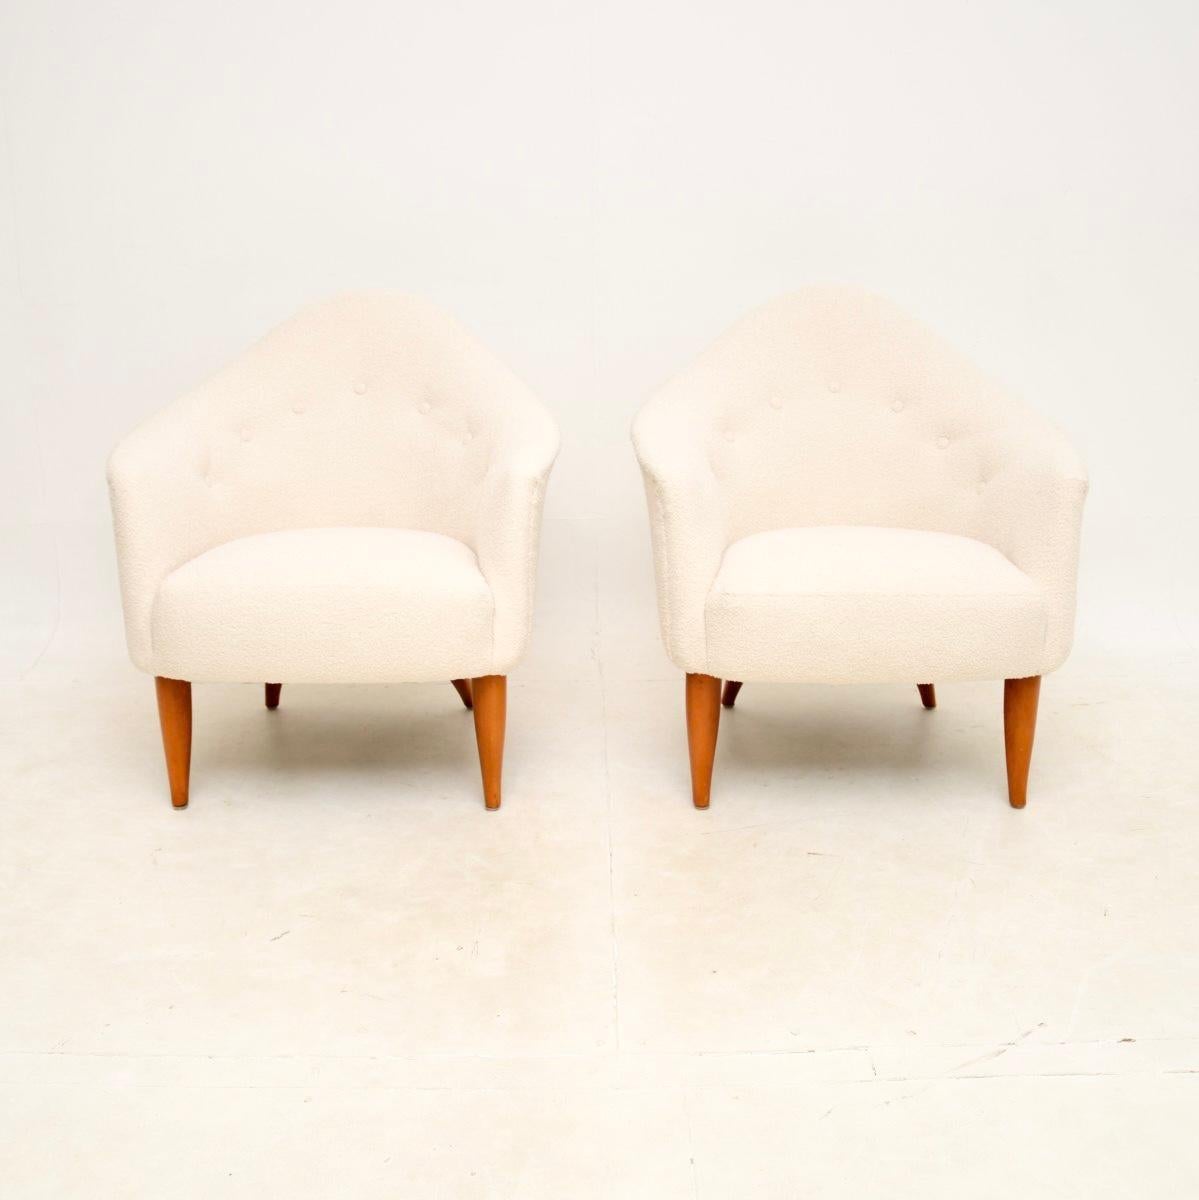 Ein absolut atemberaubendes Paar schwedischer Vintage-Sessel von Kerstin Horlin Holmquist. Dieses Modell heißt 